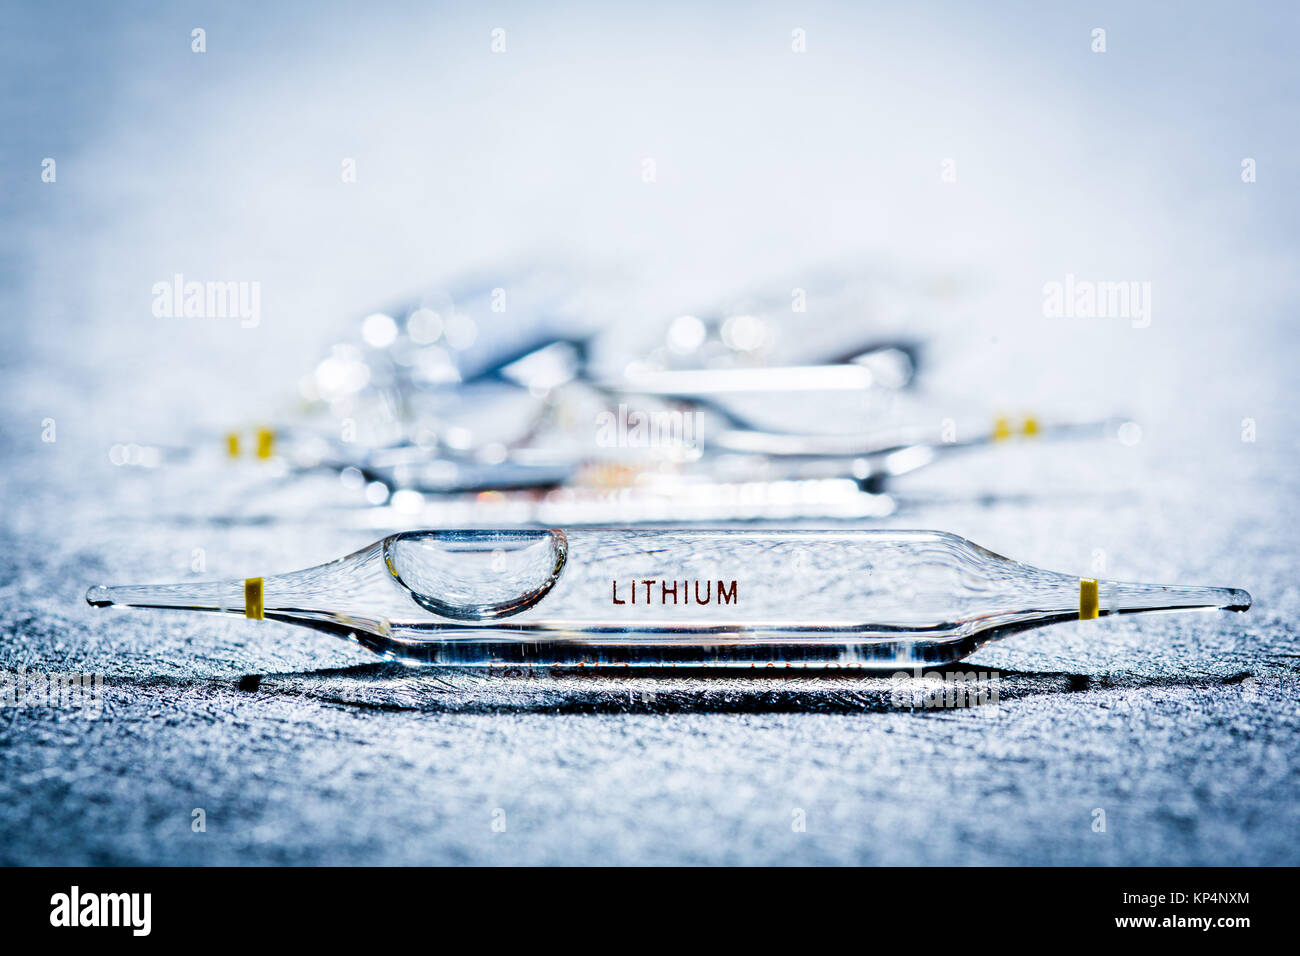 Ampoule en verre de gluconate de lithium (lithium), utilisé pour réguler  des troubles de l'humeur comme l'irritabilité ou de troubles du sommeil  Photo Stock - Alamy